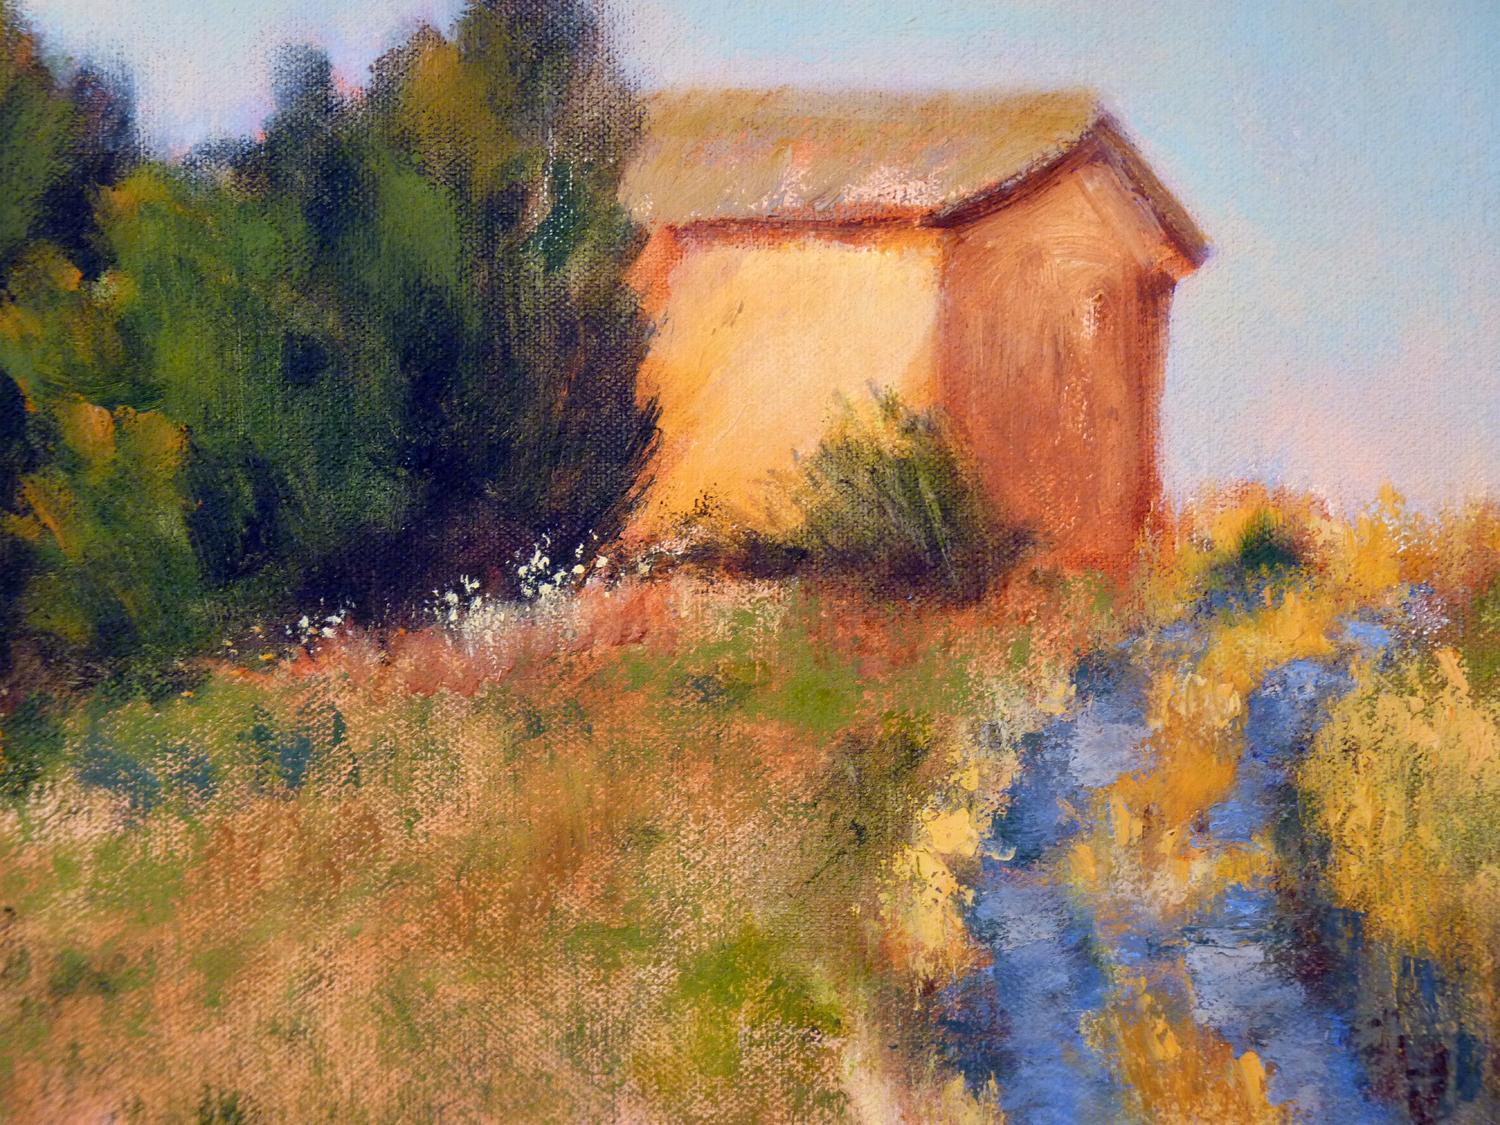 Blue Road at Dusk - Brown Landscape Painting by Elizabeth Garat